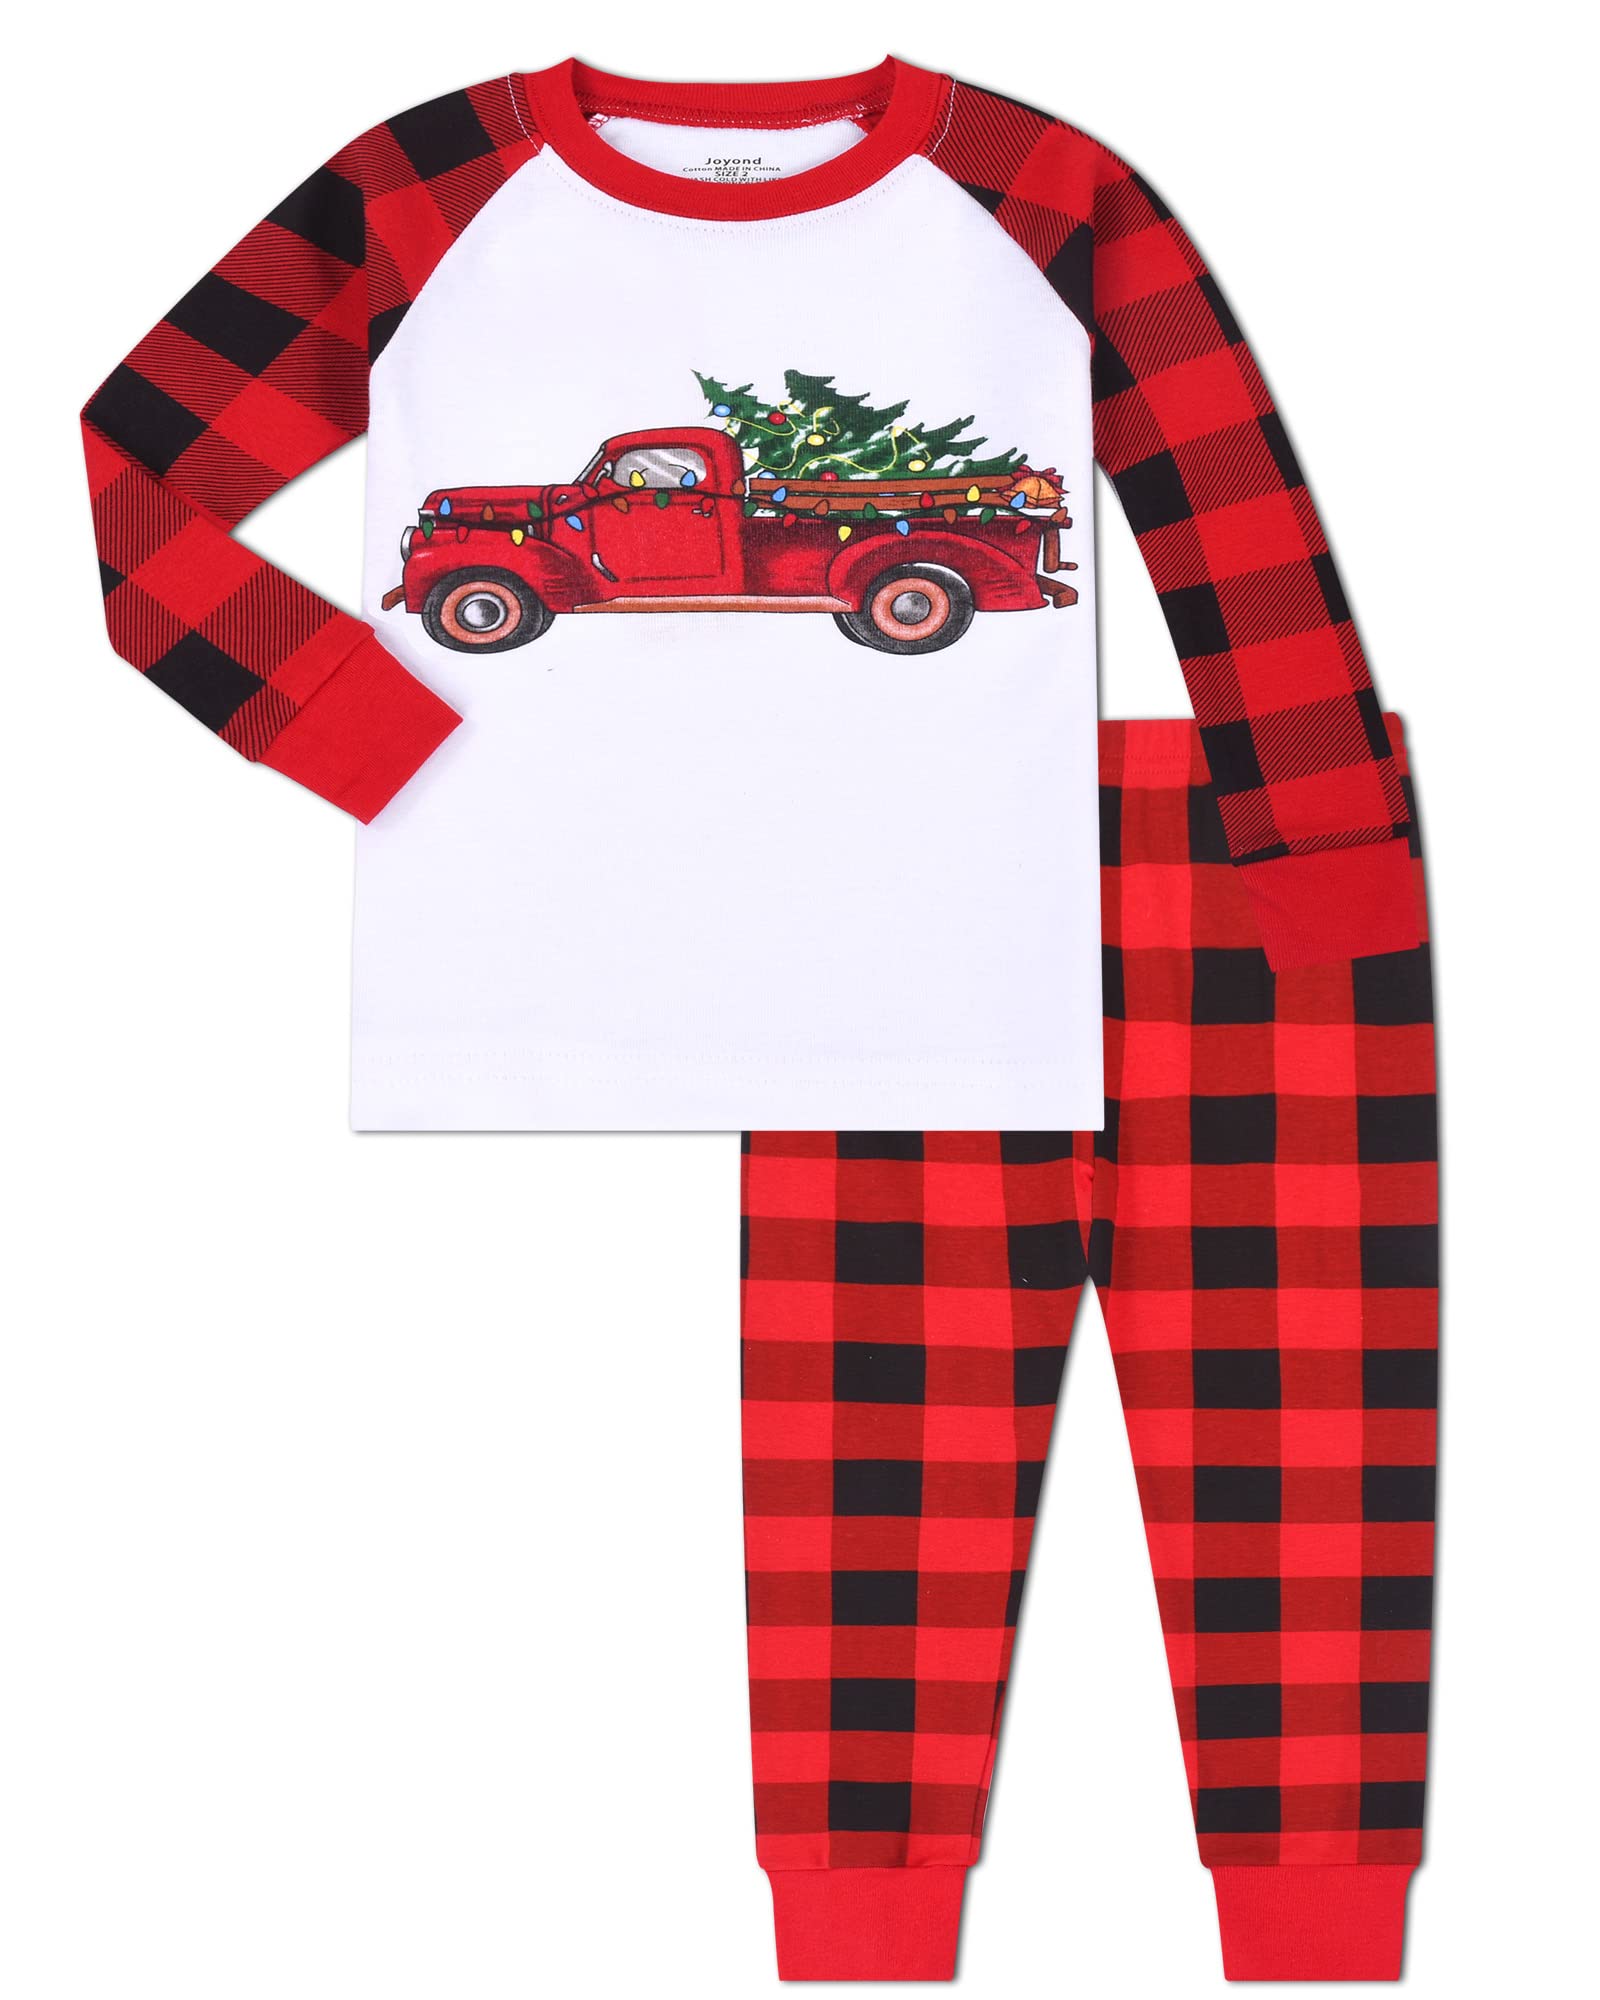 Joyond Boys Christmas Pajamas, Cotton Kids Xmas Treecar Pajama Set, Toddler Pjs Snug-Fit Long Sleeve Sleepwear Pant Set Size 18-